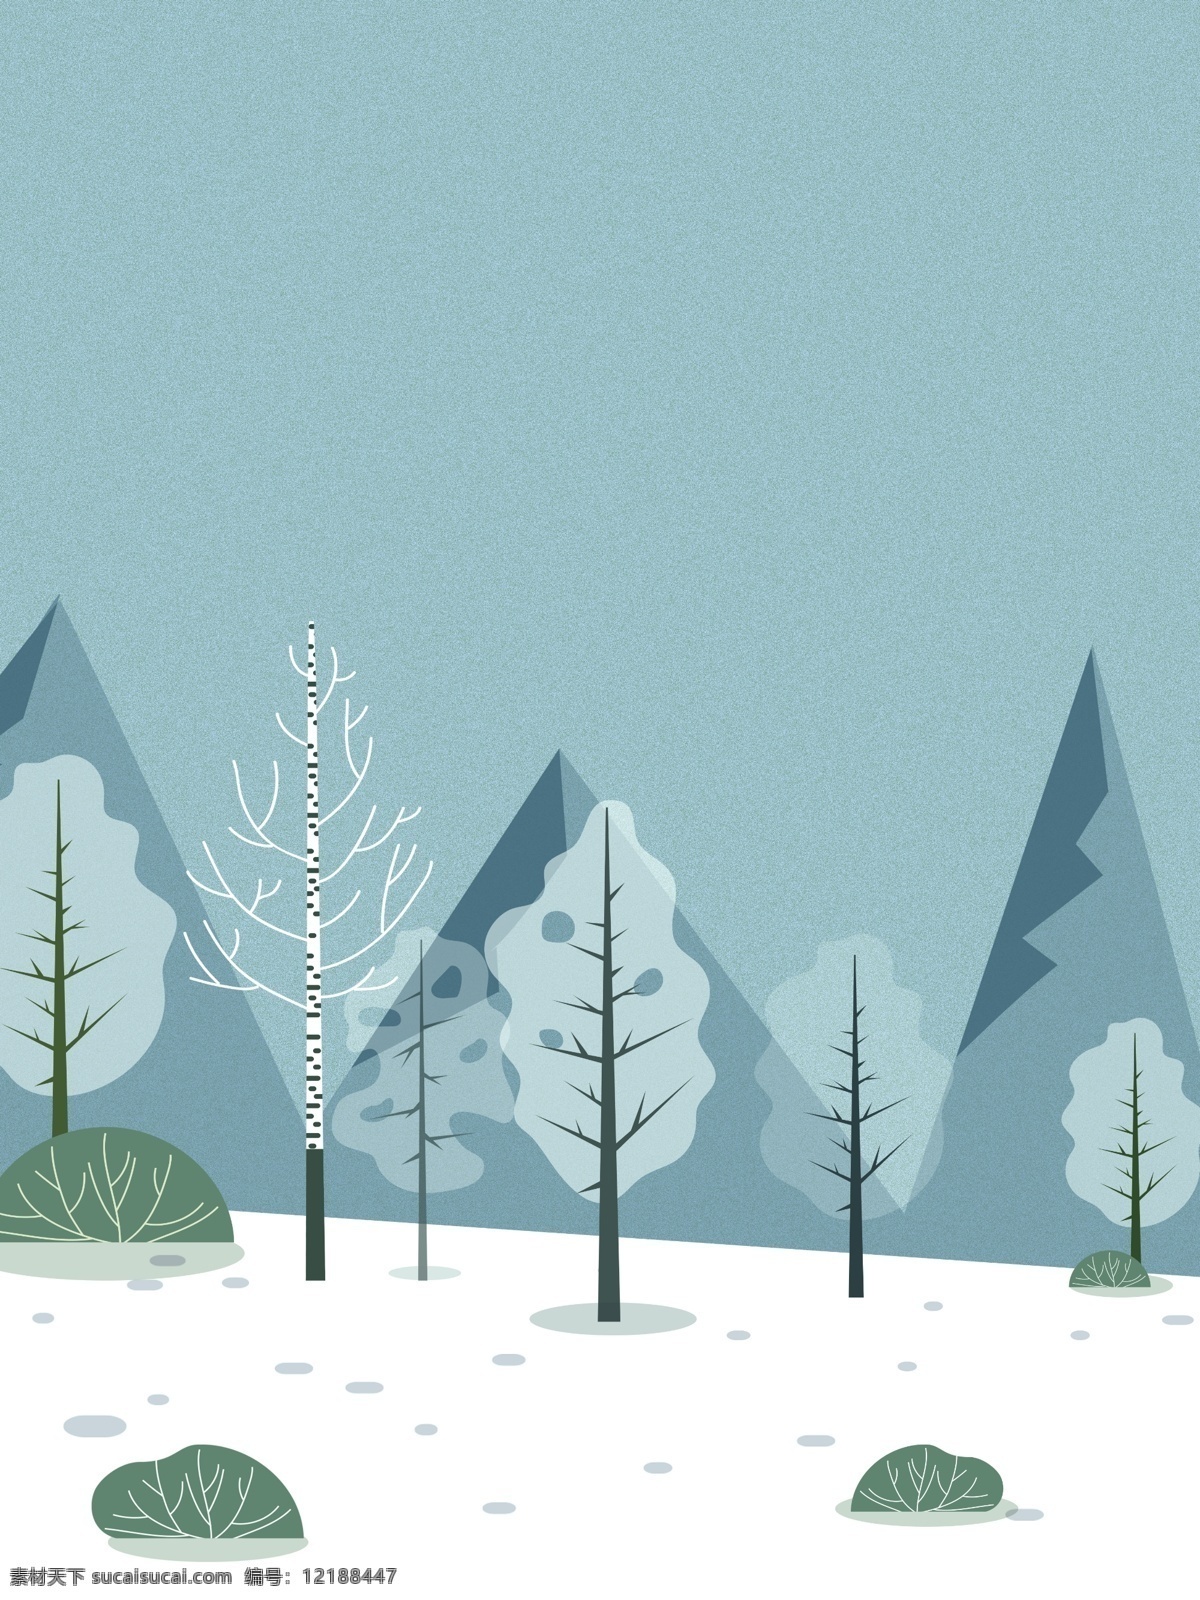 唯美 手绘 冬日 雪景 圣诞 背景 雪地 树林 背景素材 圣诞活动背景 节日背景 广告背景